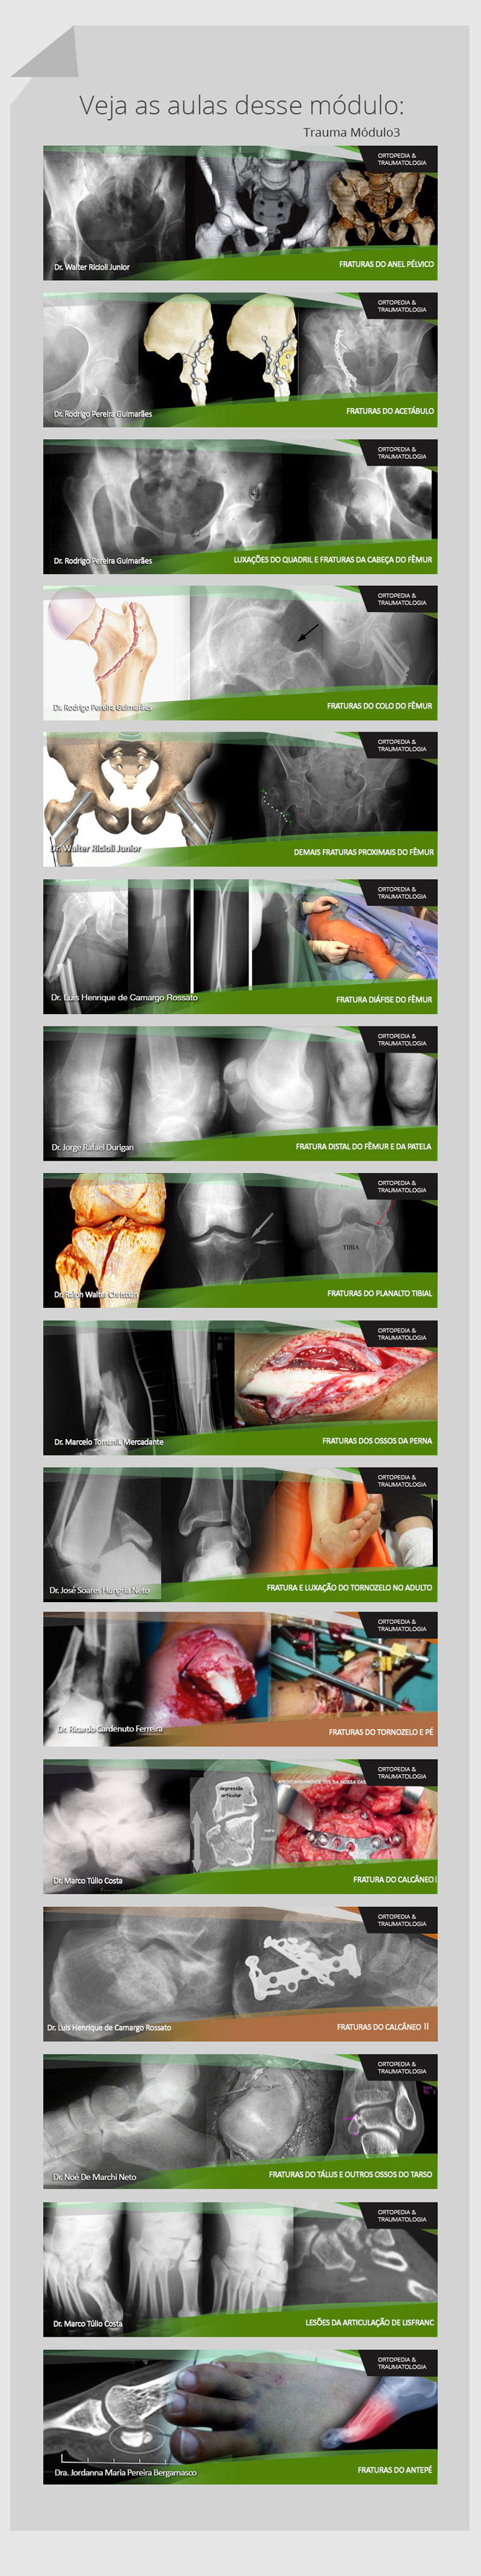 Trauma Ortopédico: Cursos Online OrthoEduca